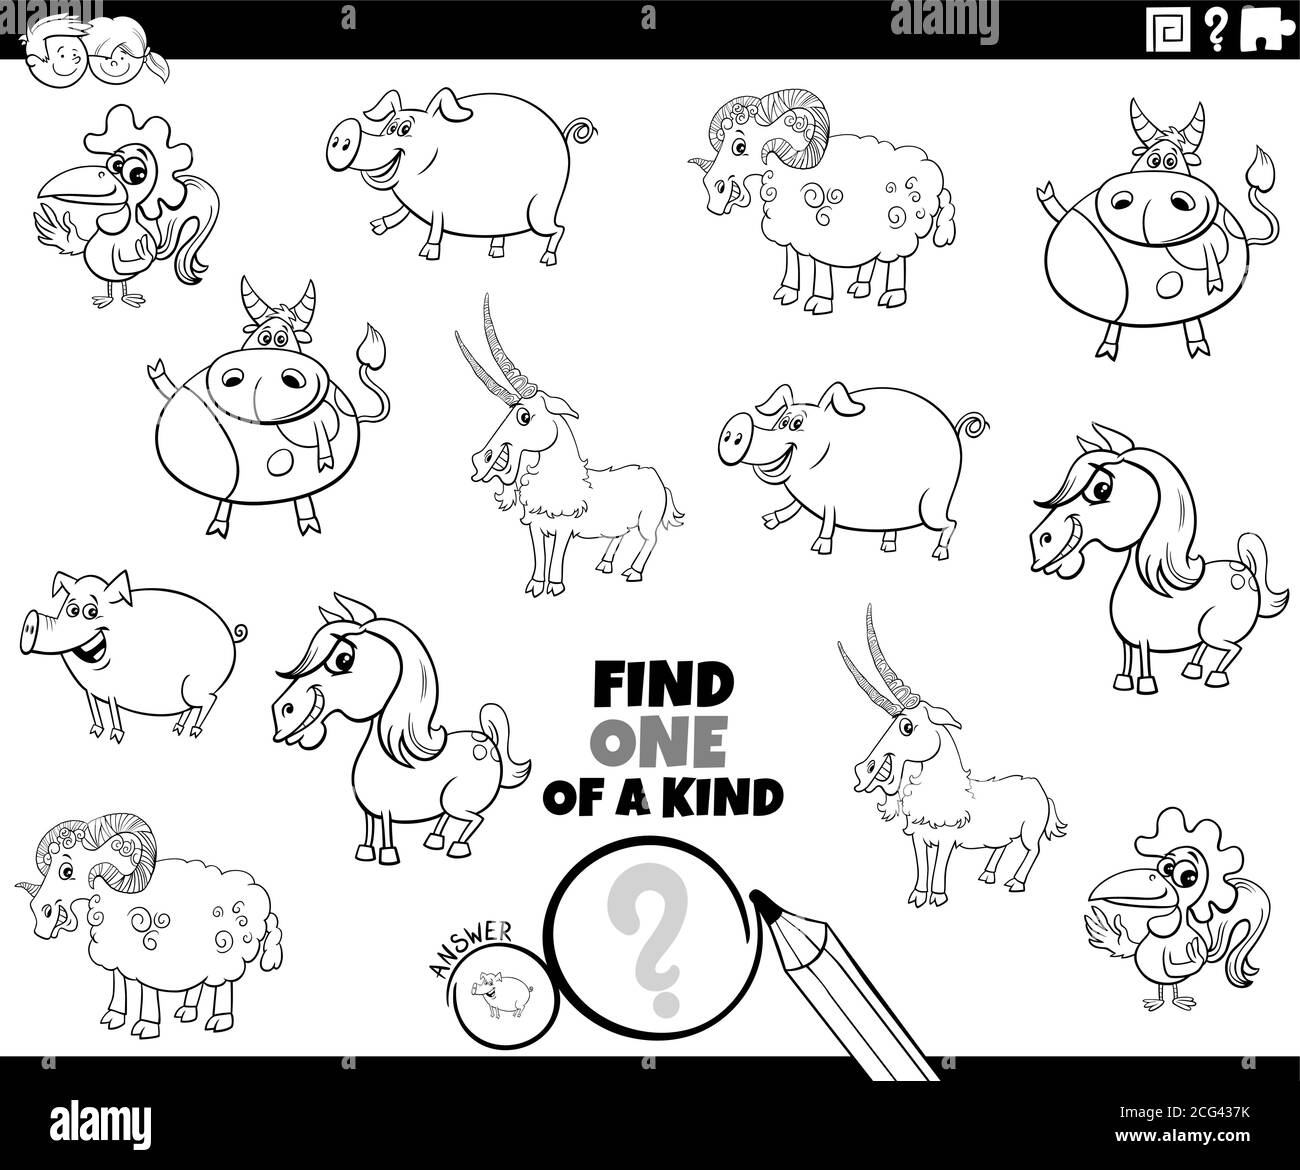 Dessin animé noir et blanc Illustration de trouver un de Genre image jeu éducatif avec la couleur de personnages de ferme comique d'animal Page de livre Illustration de Vecteur